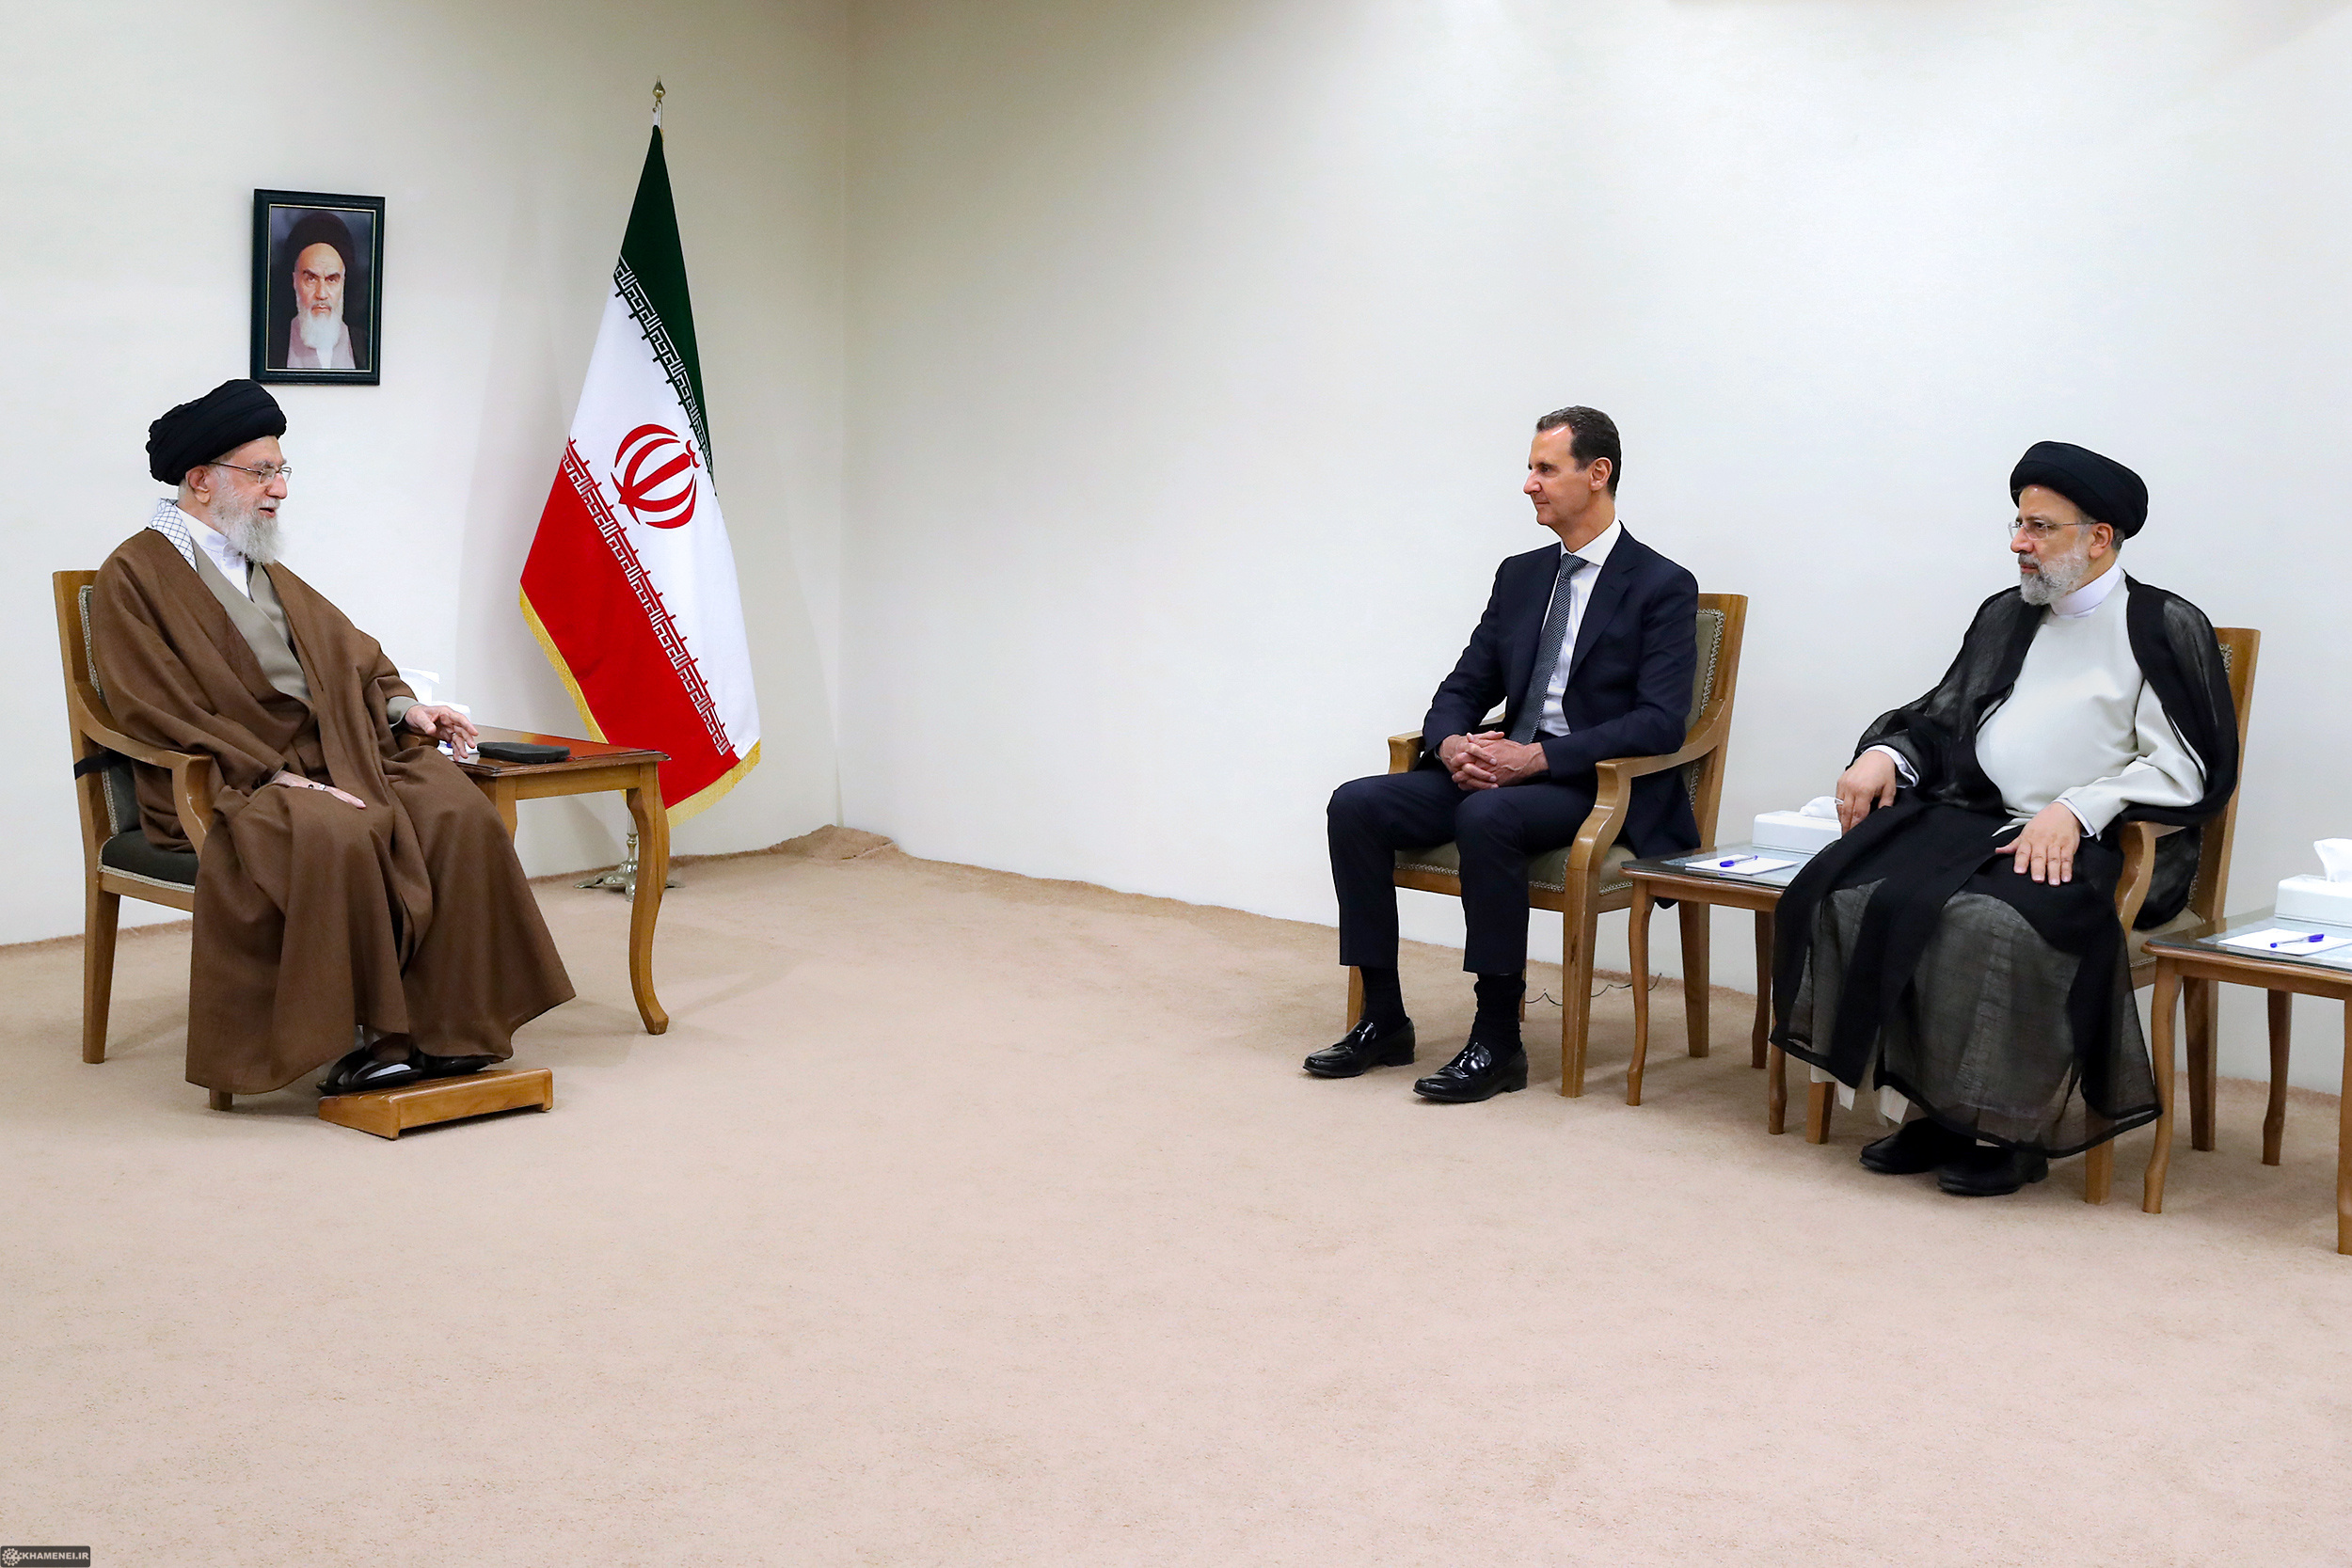 הקשרים הטובים התחילו לפני עשרות שנים. הנשיא בשאר אל-אסד עם המנהיג הרוחני של איראן עלי ח'מינאי, מאי 2022 (צילום: CC BY 4.0)